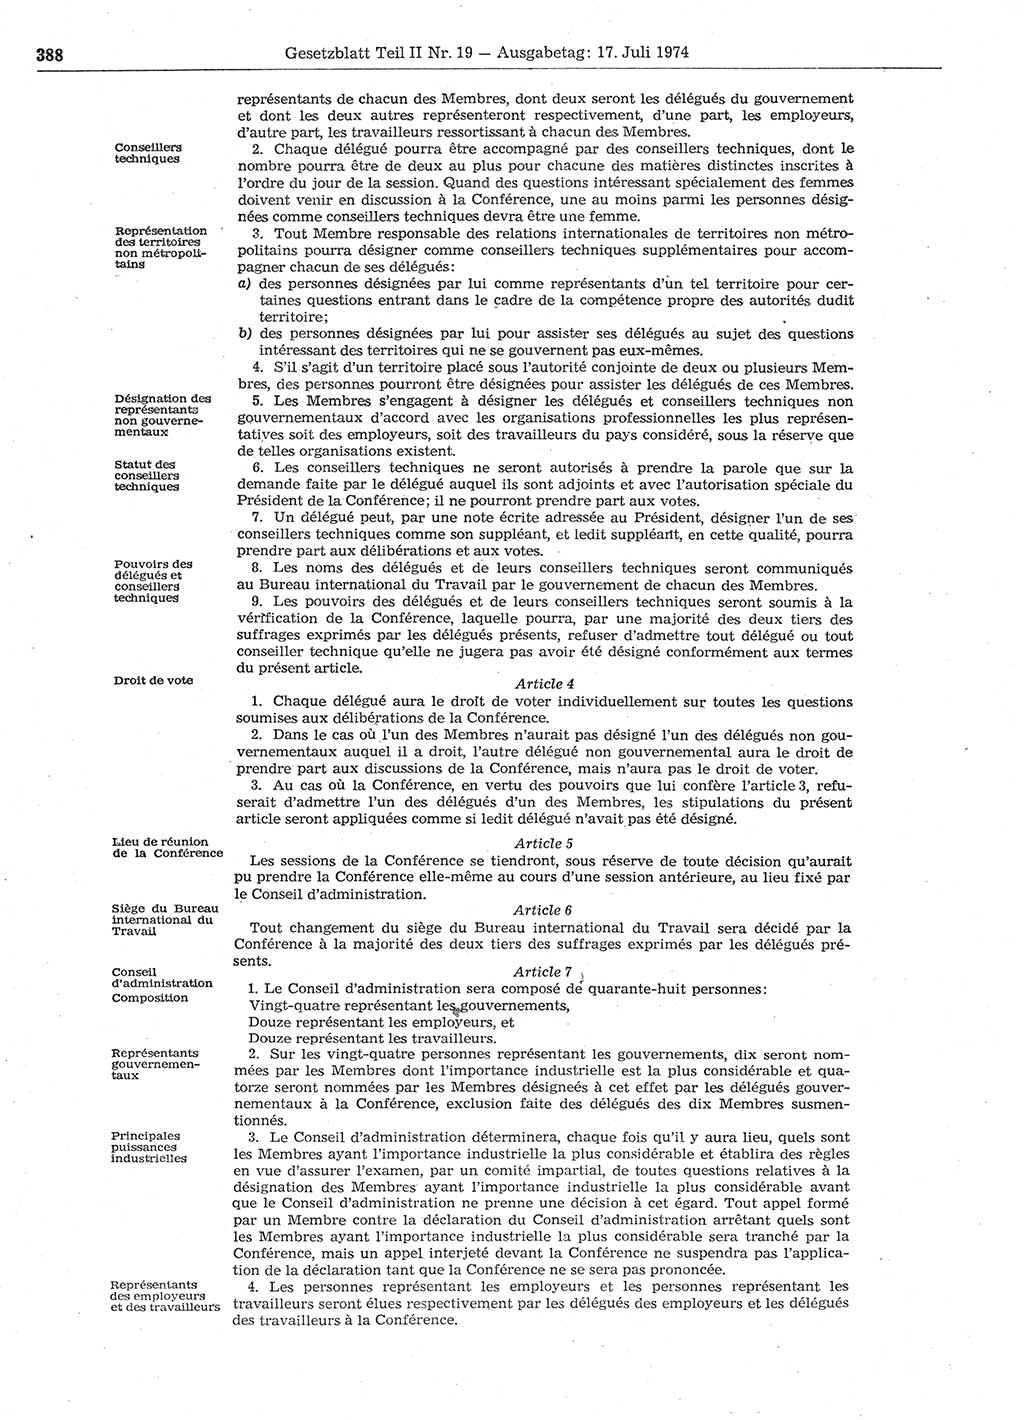 Gesetzblatt (GBl.) der Deutschen Demokratischen Republik (DDR) Teil ⅠⅠ 1974, Seite 388 (GBl. DDR ⅠⅠ 1974, S. 388)